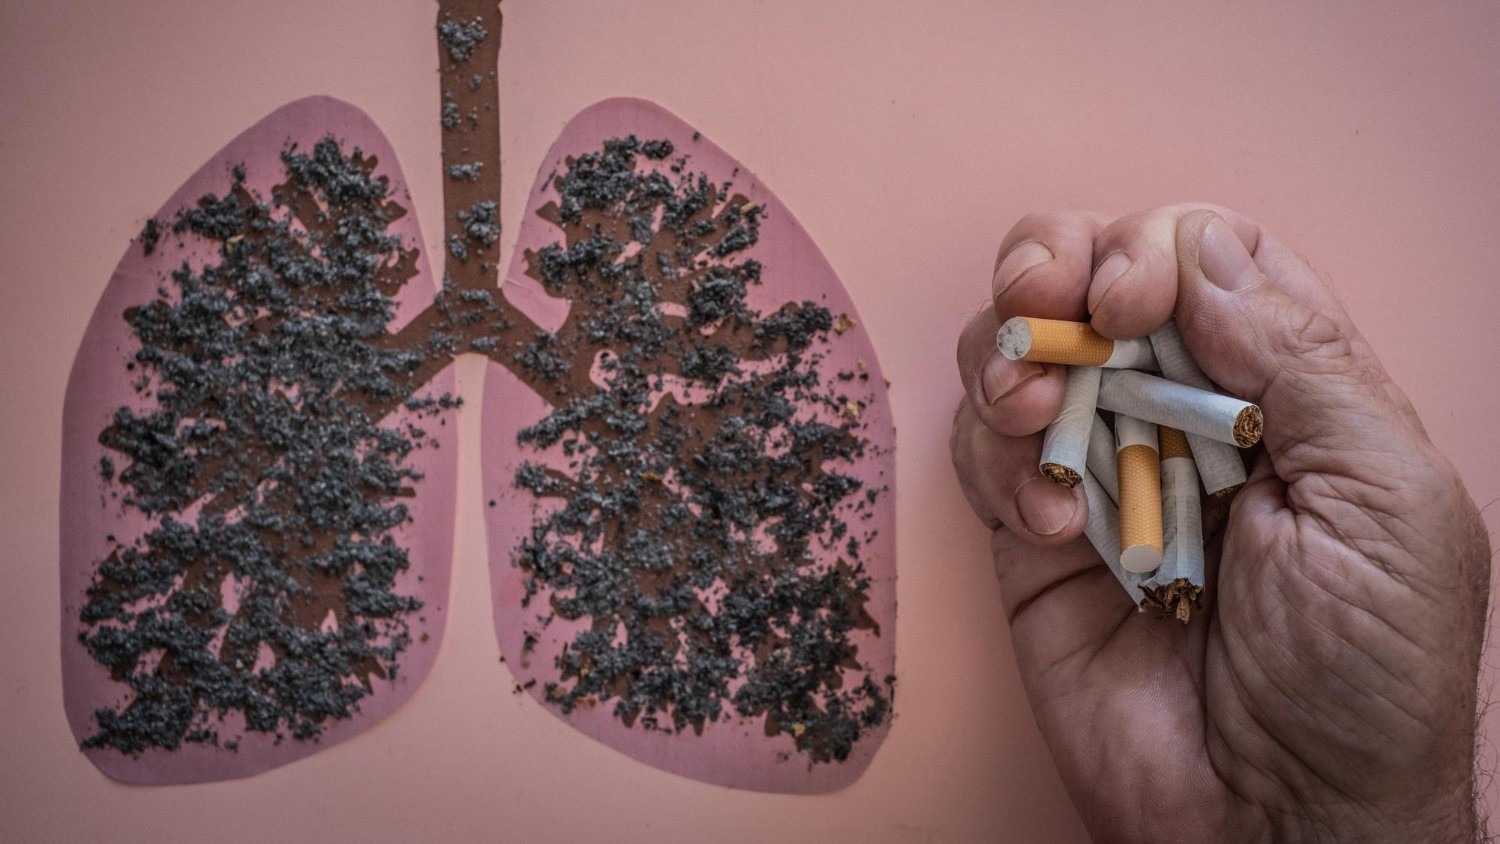 Rokerslong of Chronic Obstructive Pulmonary Disease (COPD) is een ernstige longaandoening. Het start met een ontsteking van de luchtwegen.